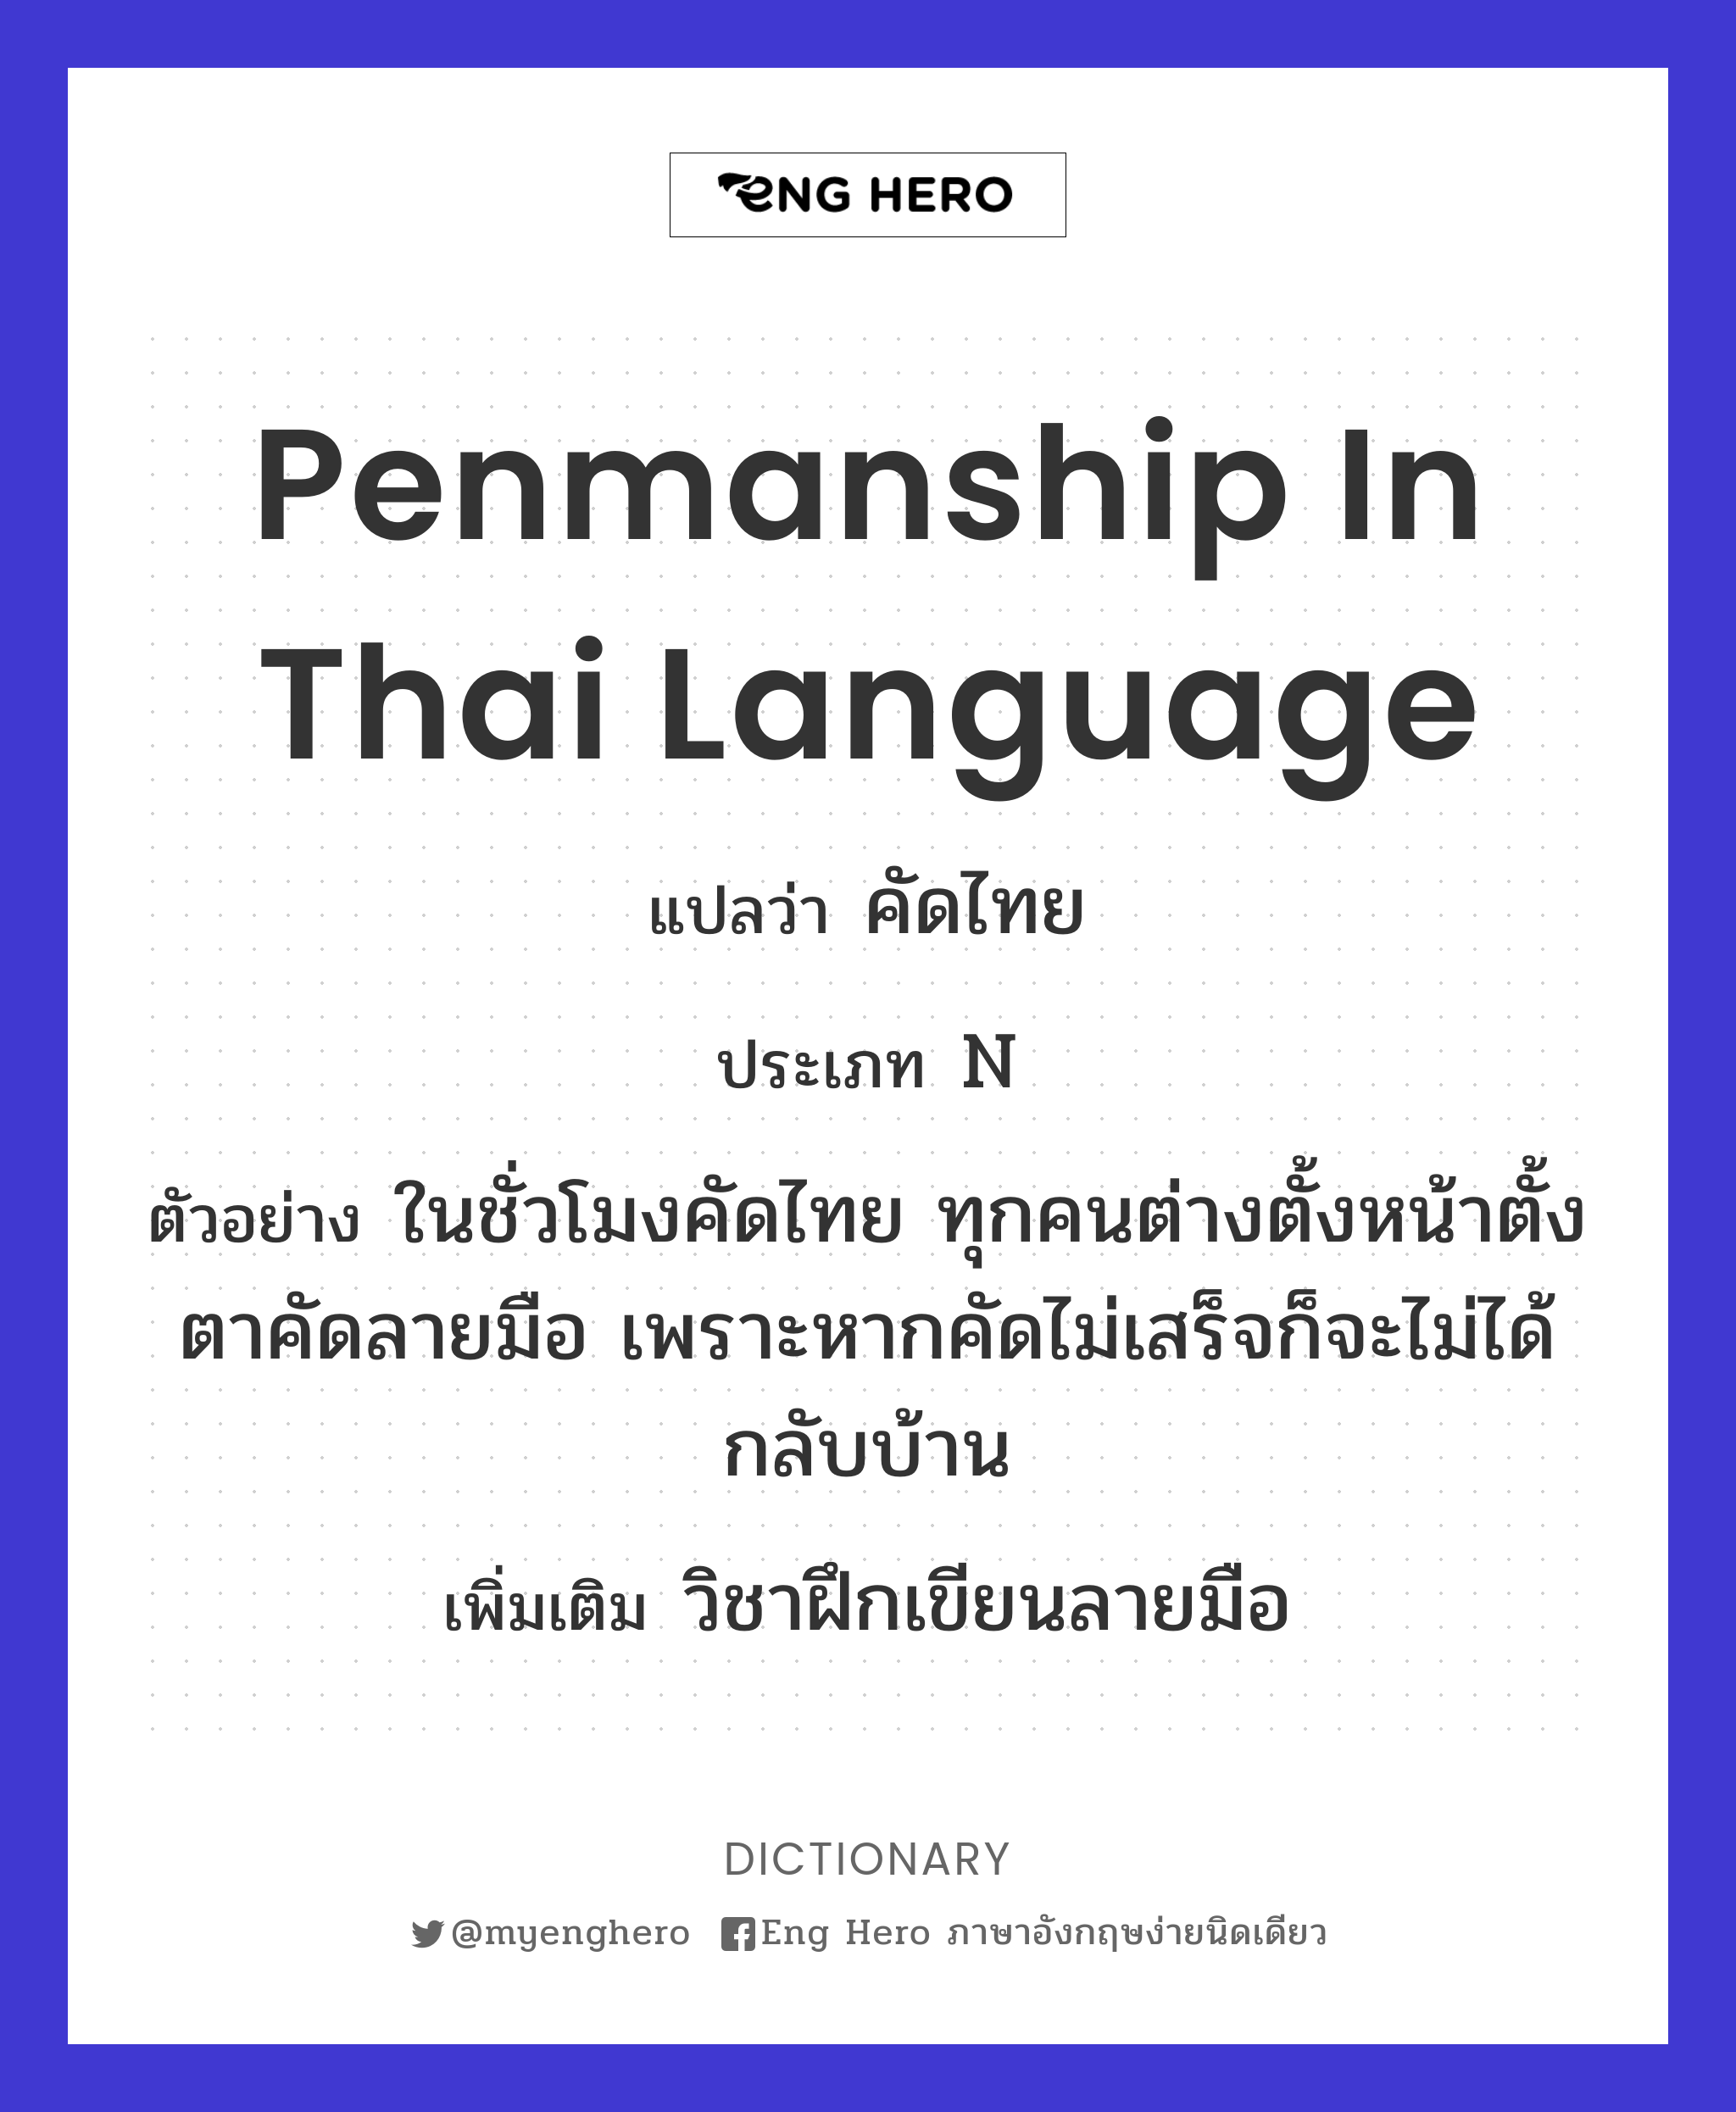 penmanship in Thai language